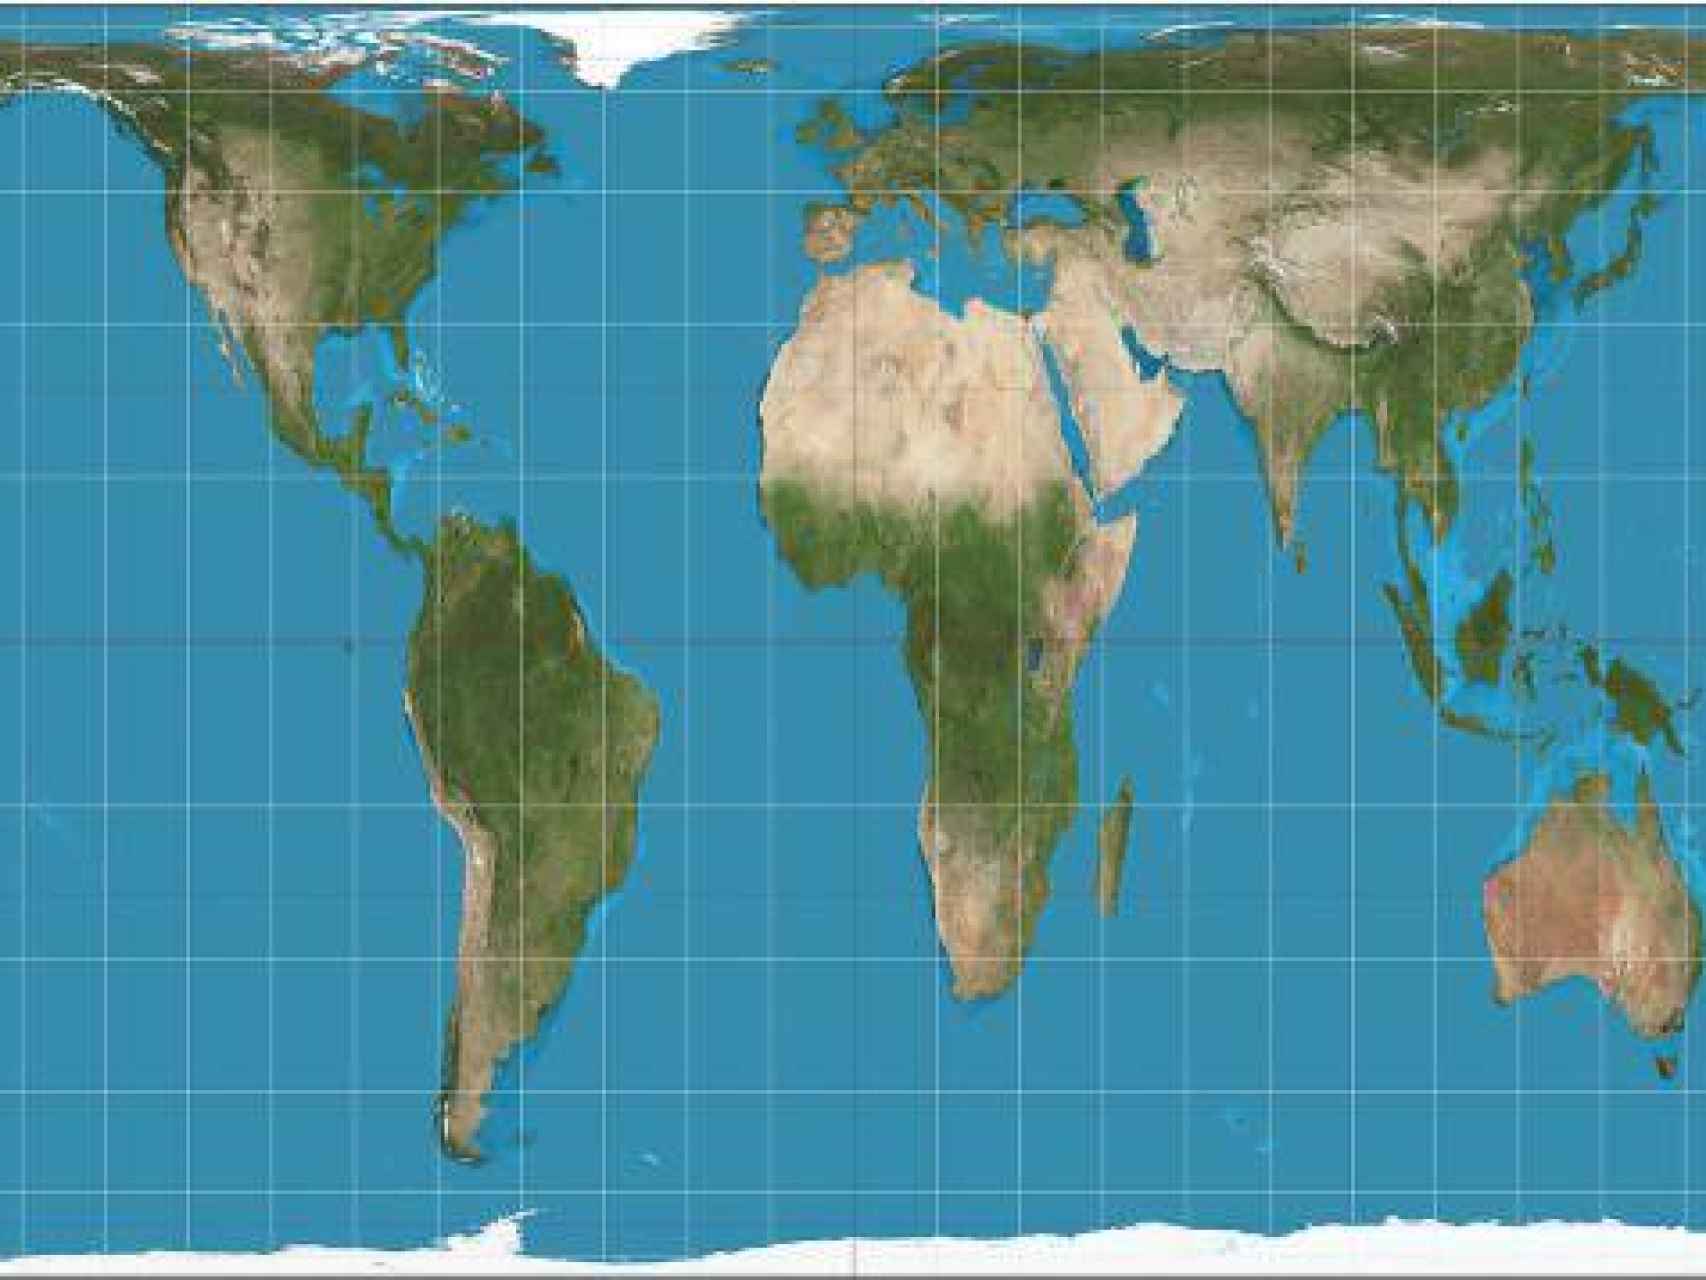 Tamaño real de los países según Google Maps